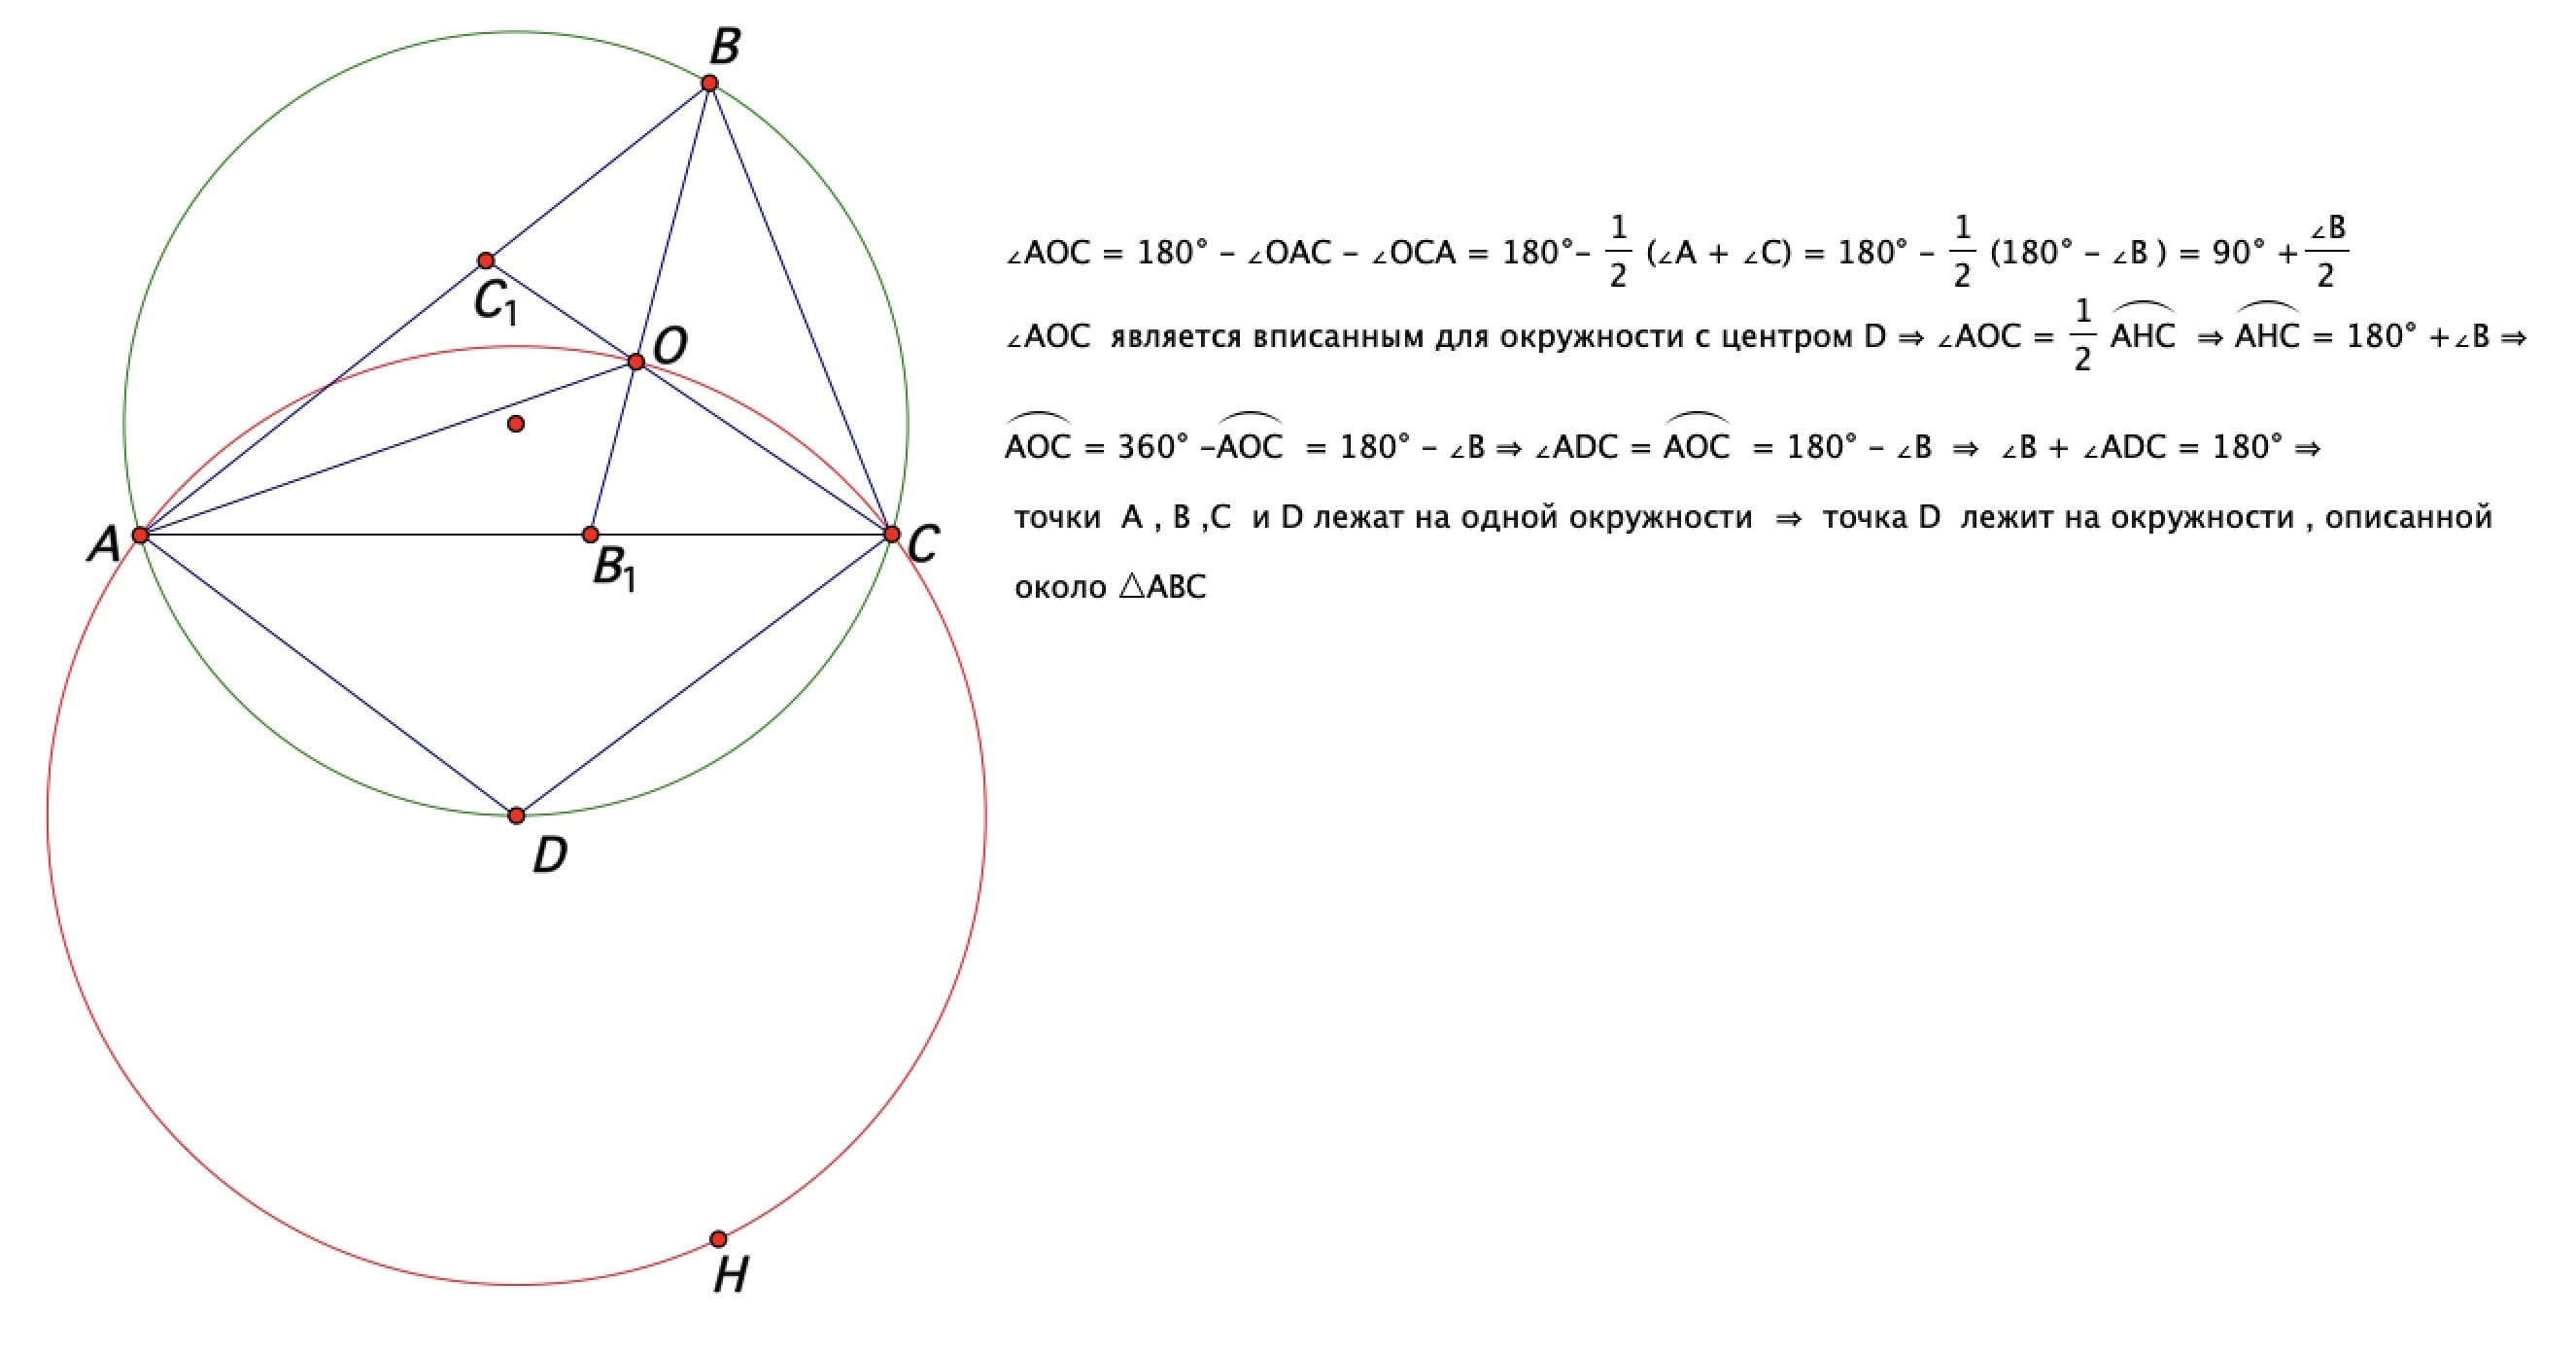 Биссектрисы описанного треугольника пересекаются в центре окружности. Центр окружности описанной около треугольника АВС. Центр опис окружности около треугольника. Биссектриса bb1 и cc1 пересекают описанную окружность. Центр окружности на биссектрисе.